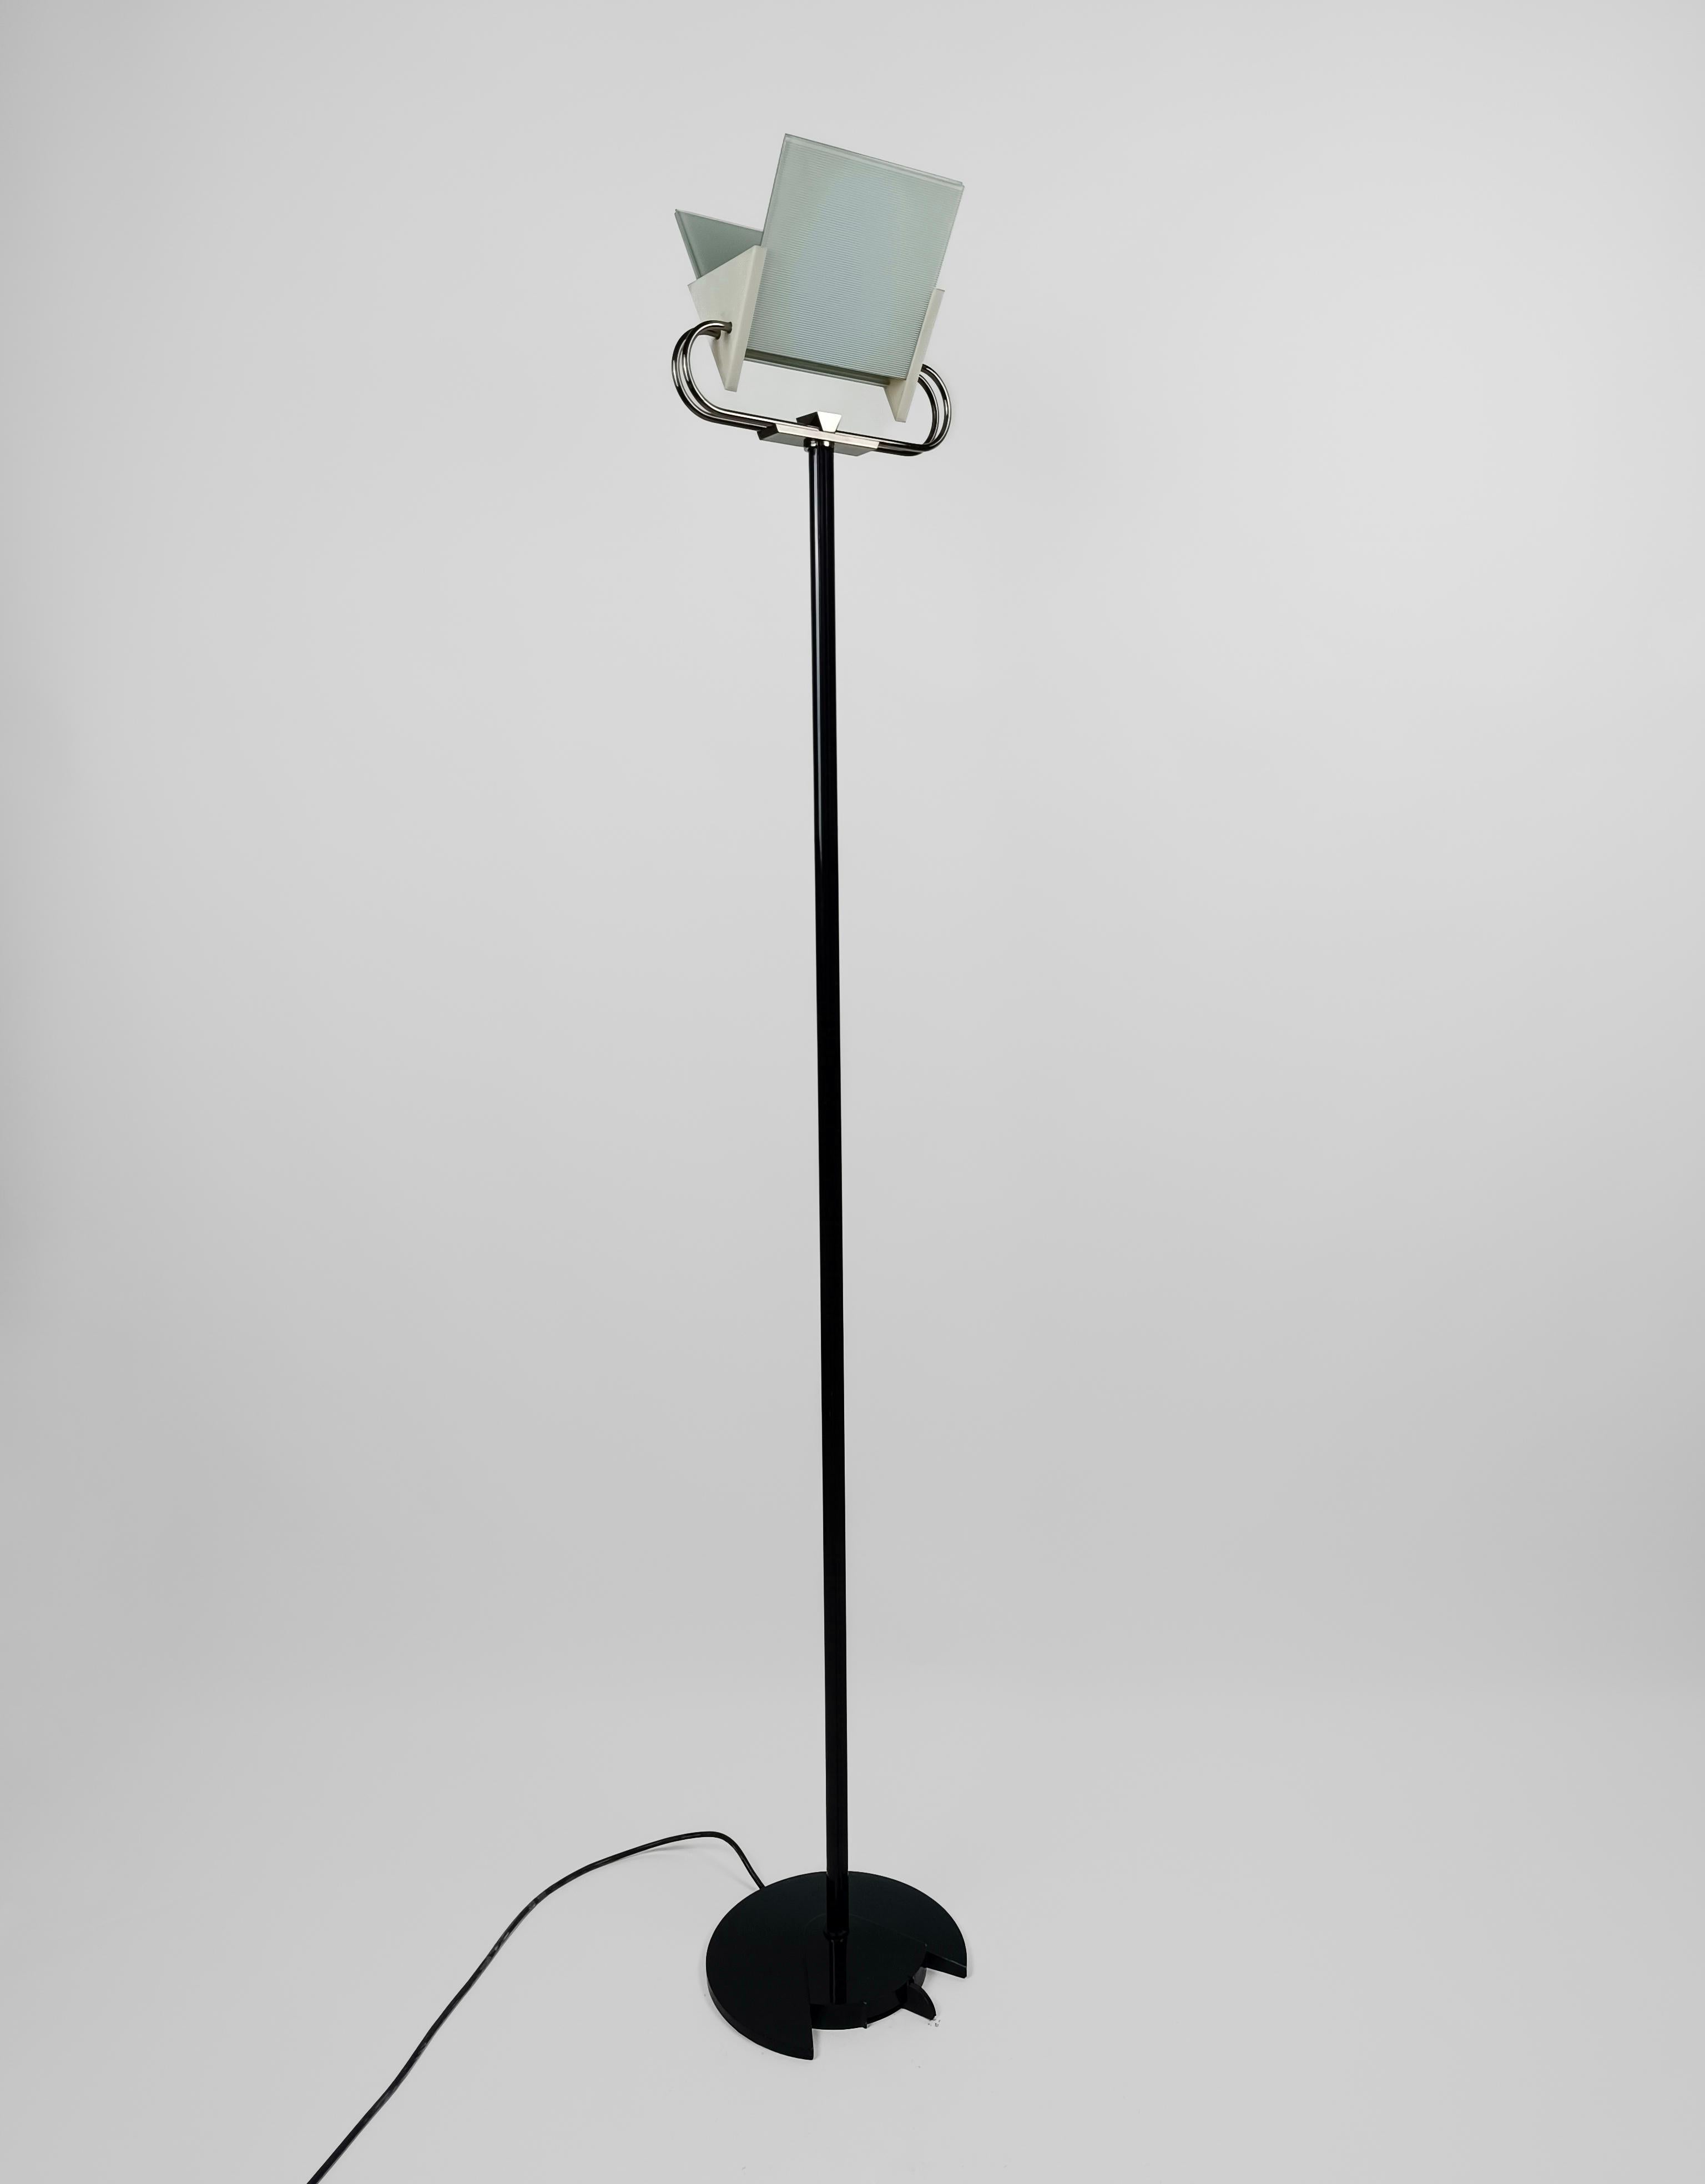 Eine postmoderne Stehleuchte mit viel Charme, hergestellt in Italien von der historischen Leuchtenfirma Arteluce, die 1939 von Gino Sarfatti gegründet wurde.
Diese in den 80er Jahren entworfene und produzierte Stehleuchte weist viele typische